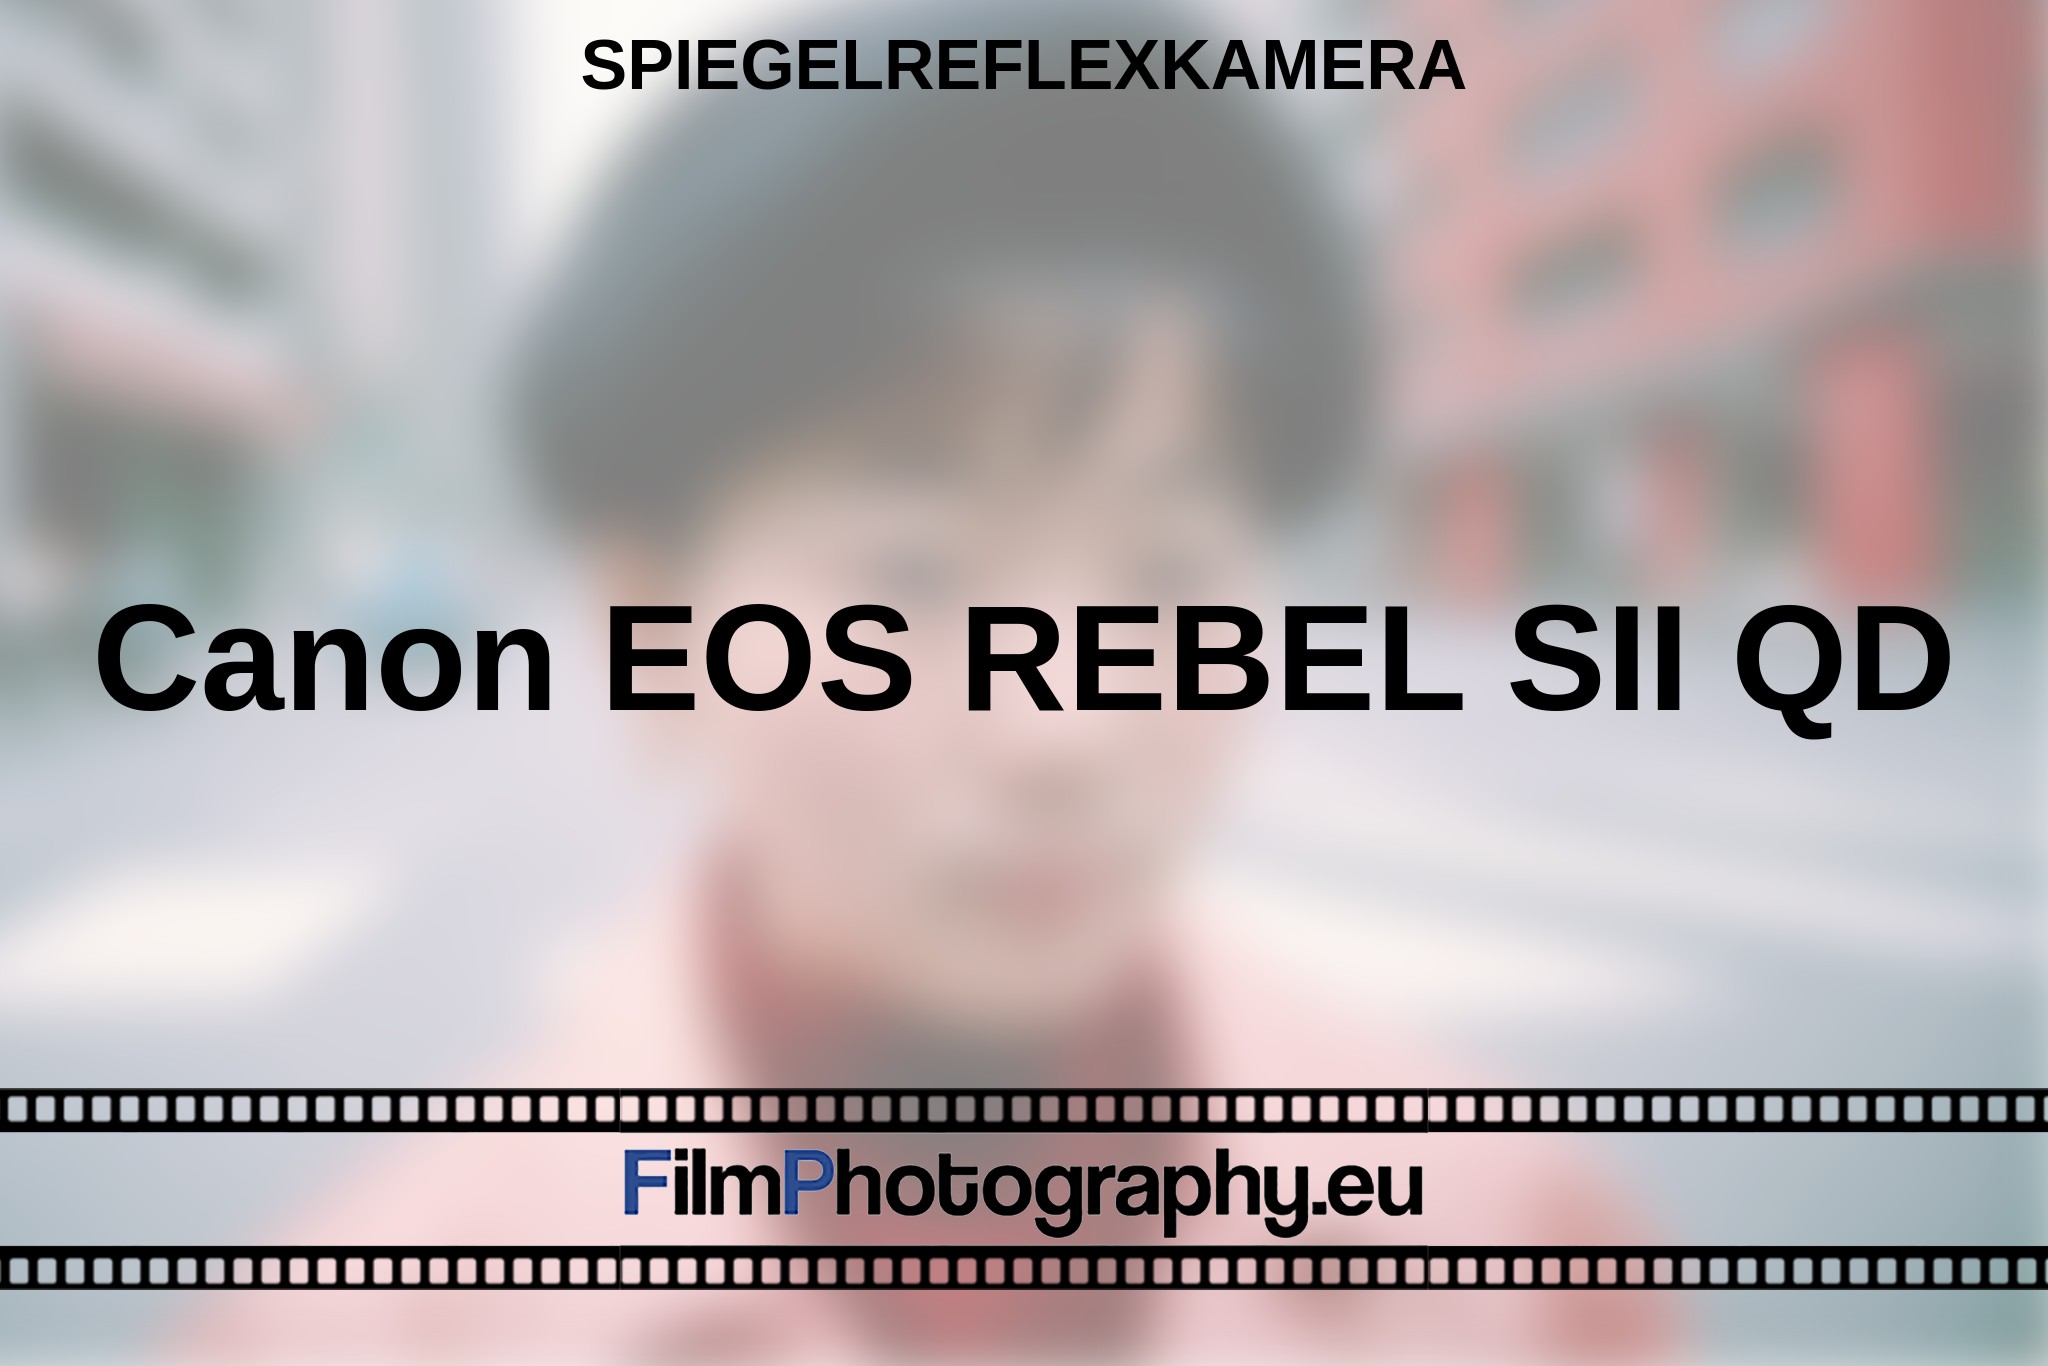 canon-eos-rebel-sii-qd-spiegelreflexkamera-bnv.jpg